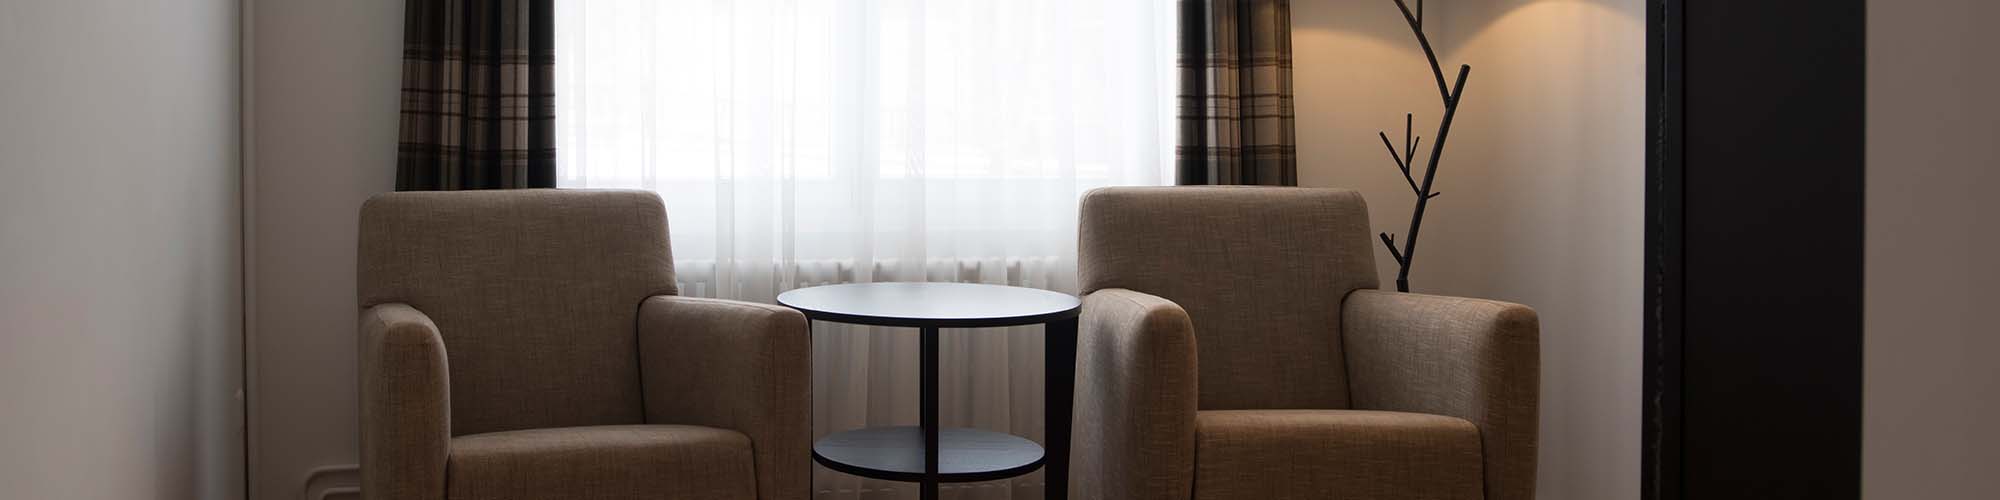 Hotel Davos - Grossräumiges Zimmer - mit separatem Schlaf- und Wohnbereich